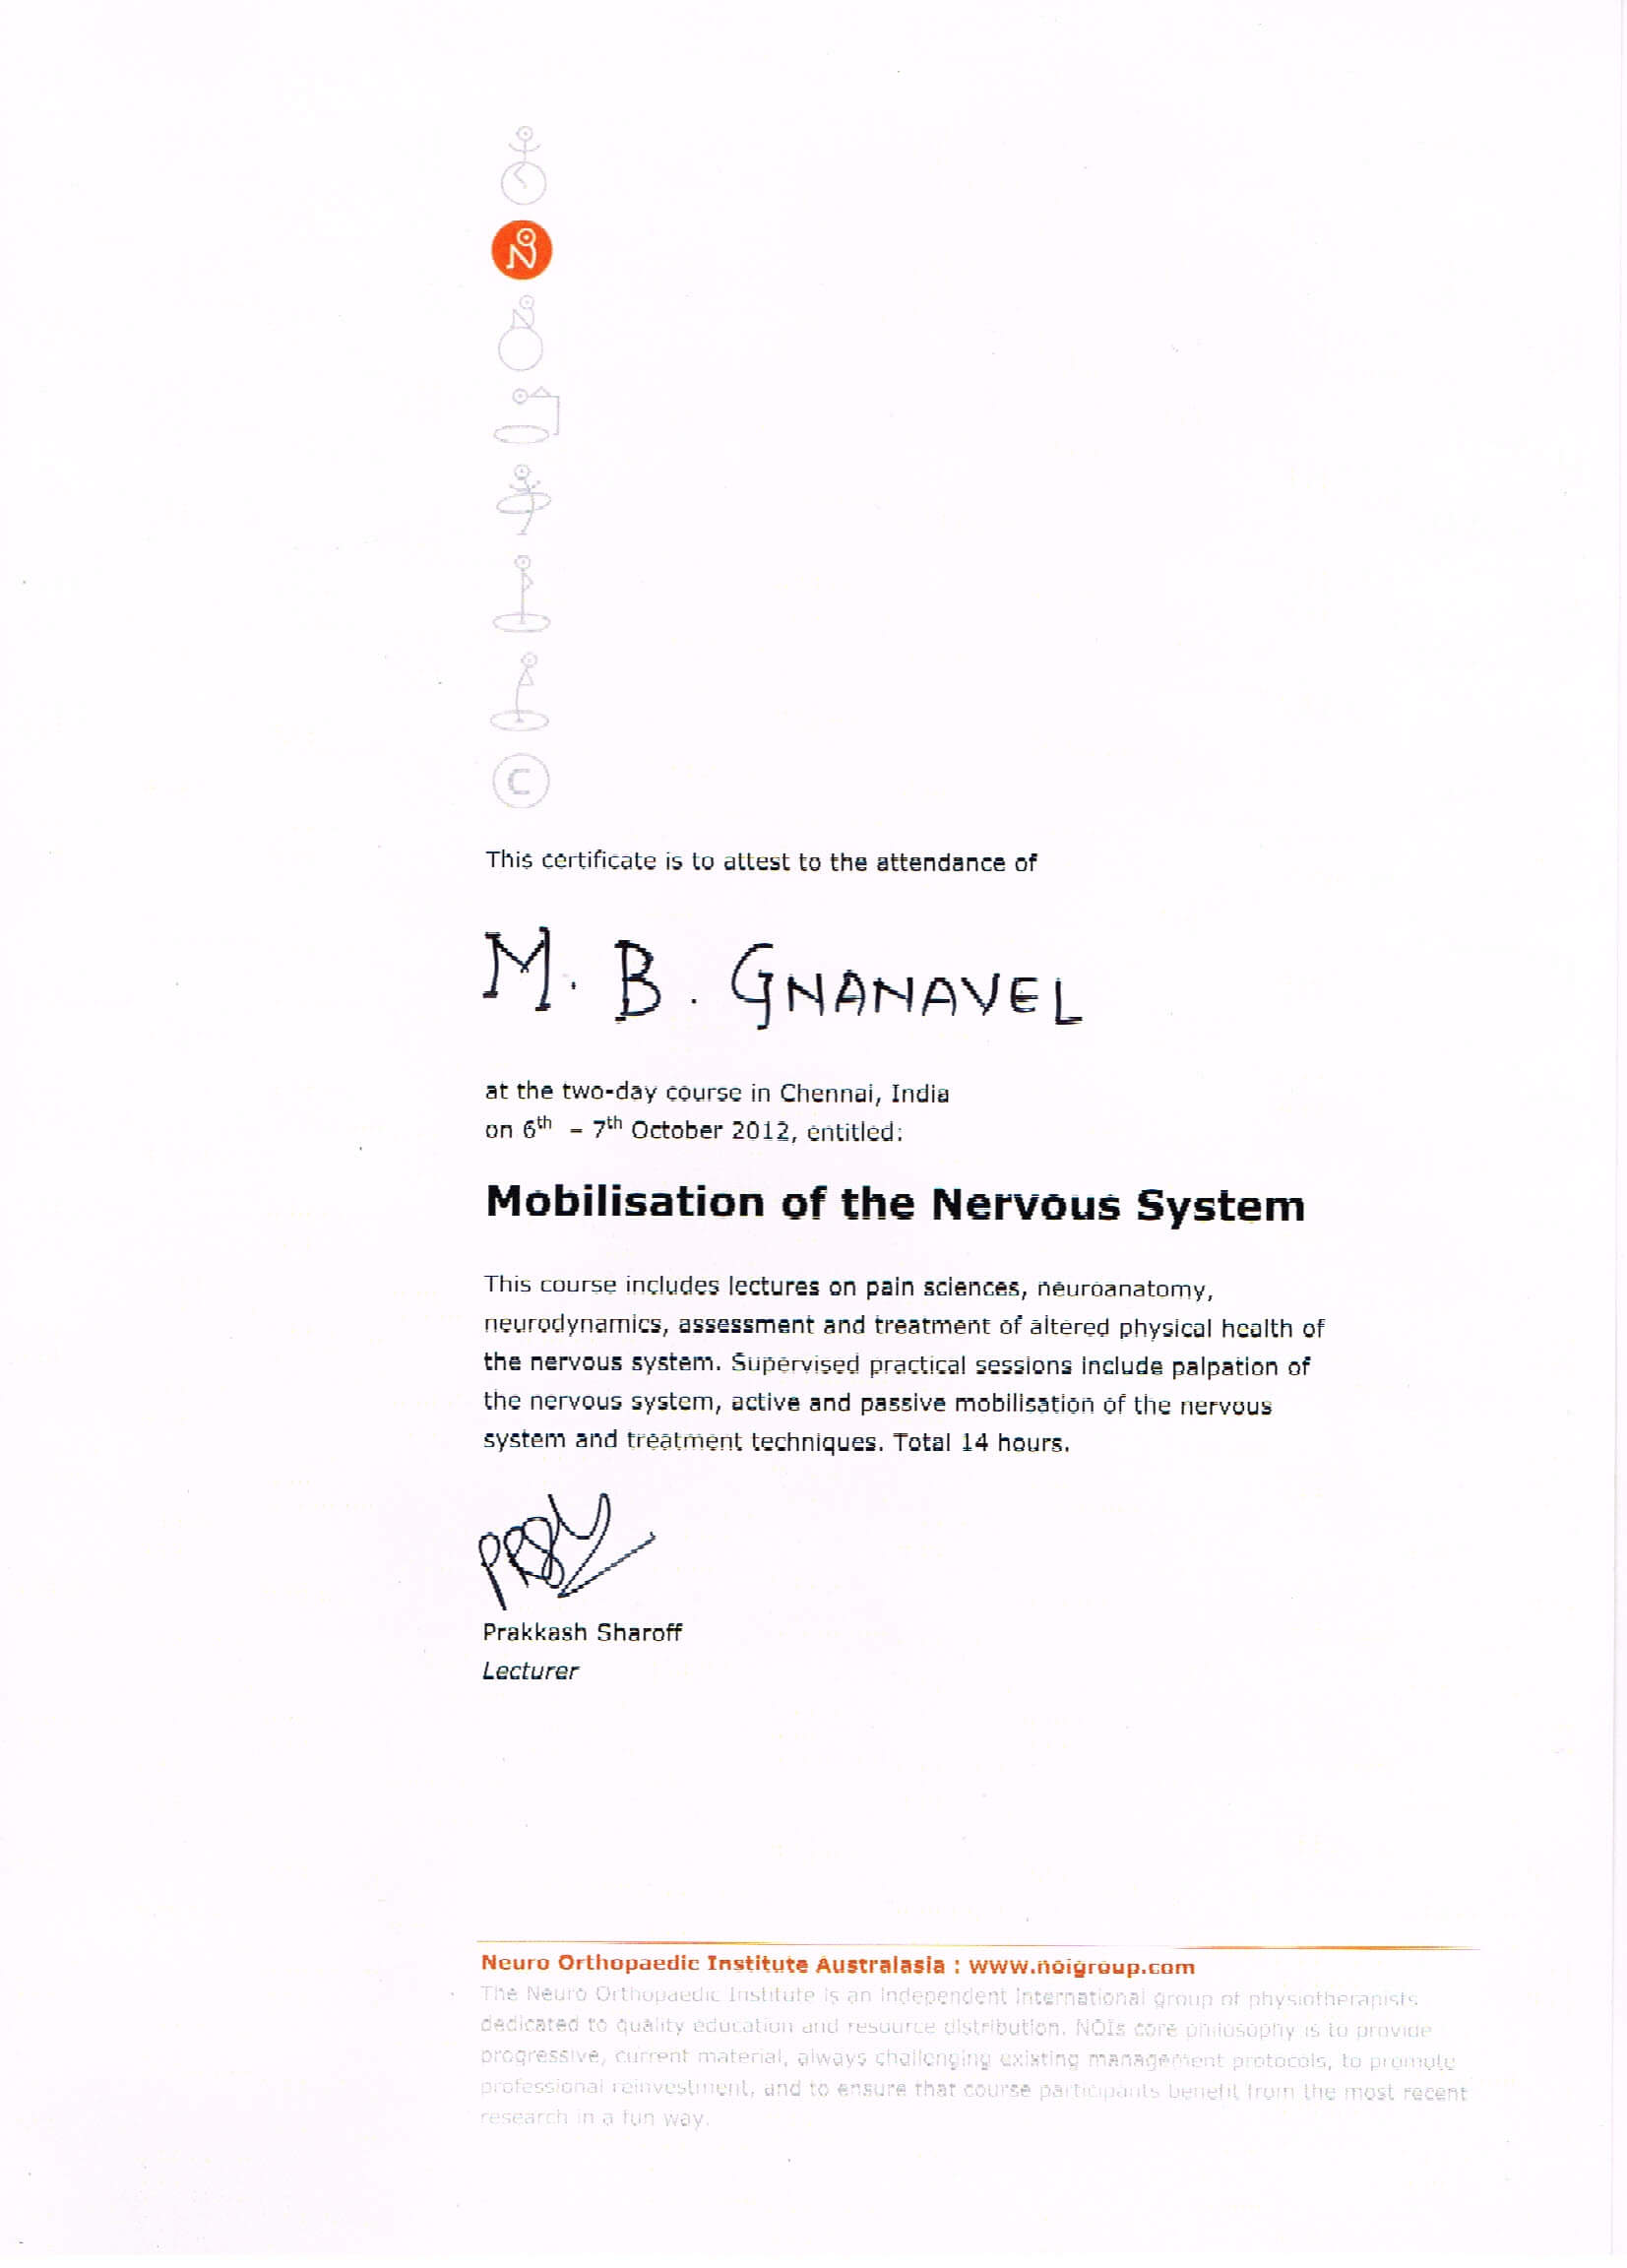 gnanavel-mobilisation-nervous-system-certificate